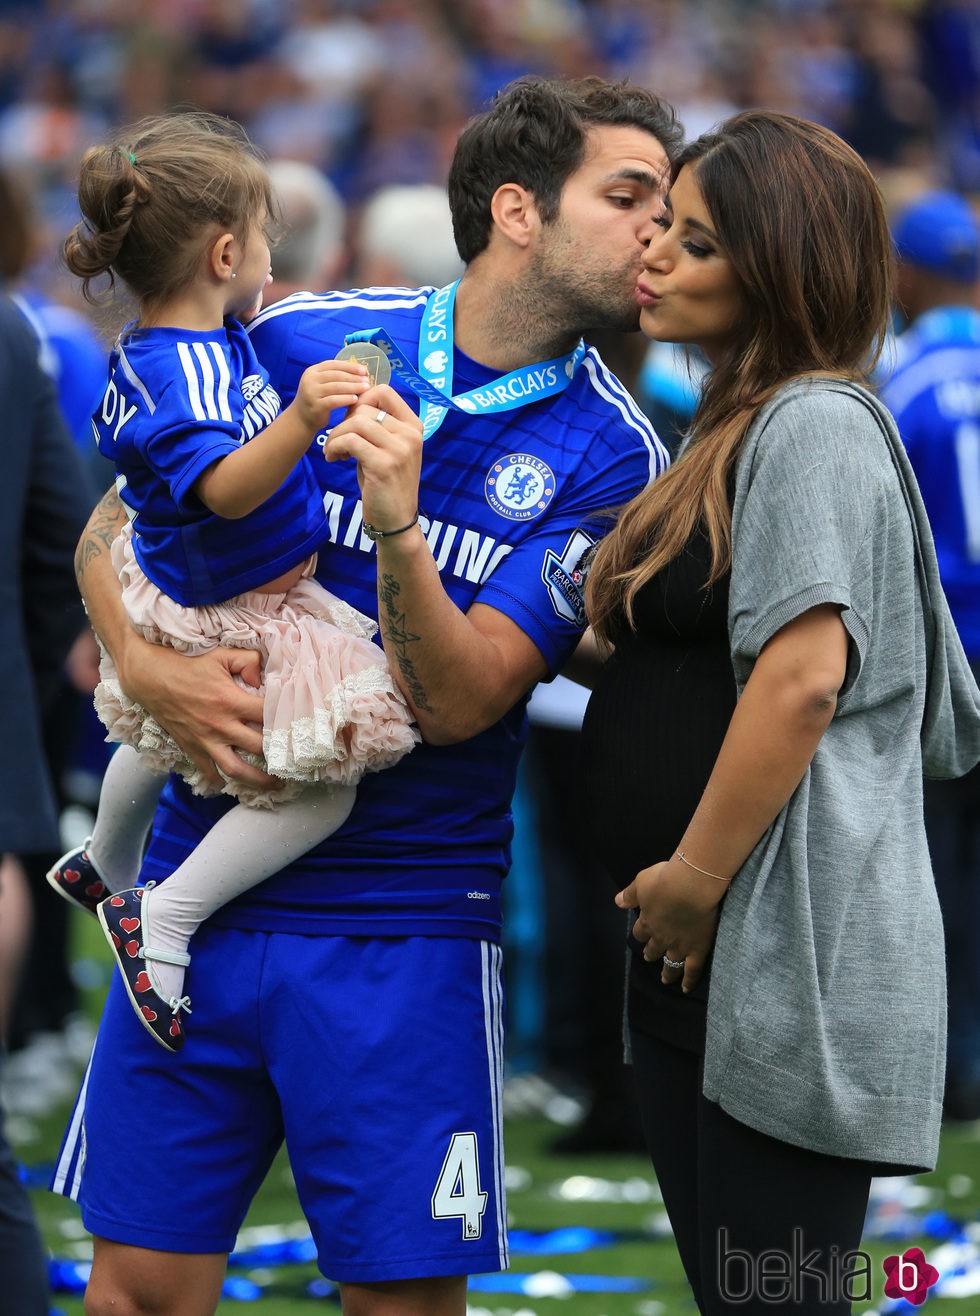 Cesc Fàbregas besa a Daniella Semaan junto a su hija Lia en la celebración de la Premier League del Chelsea